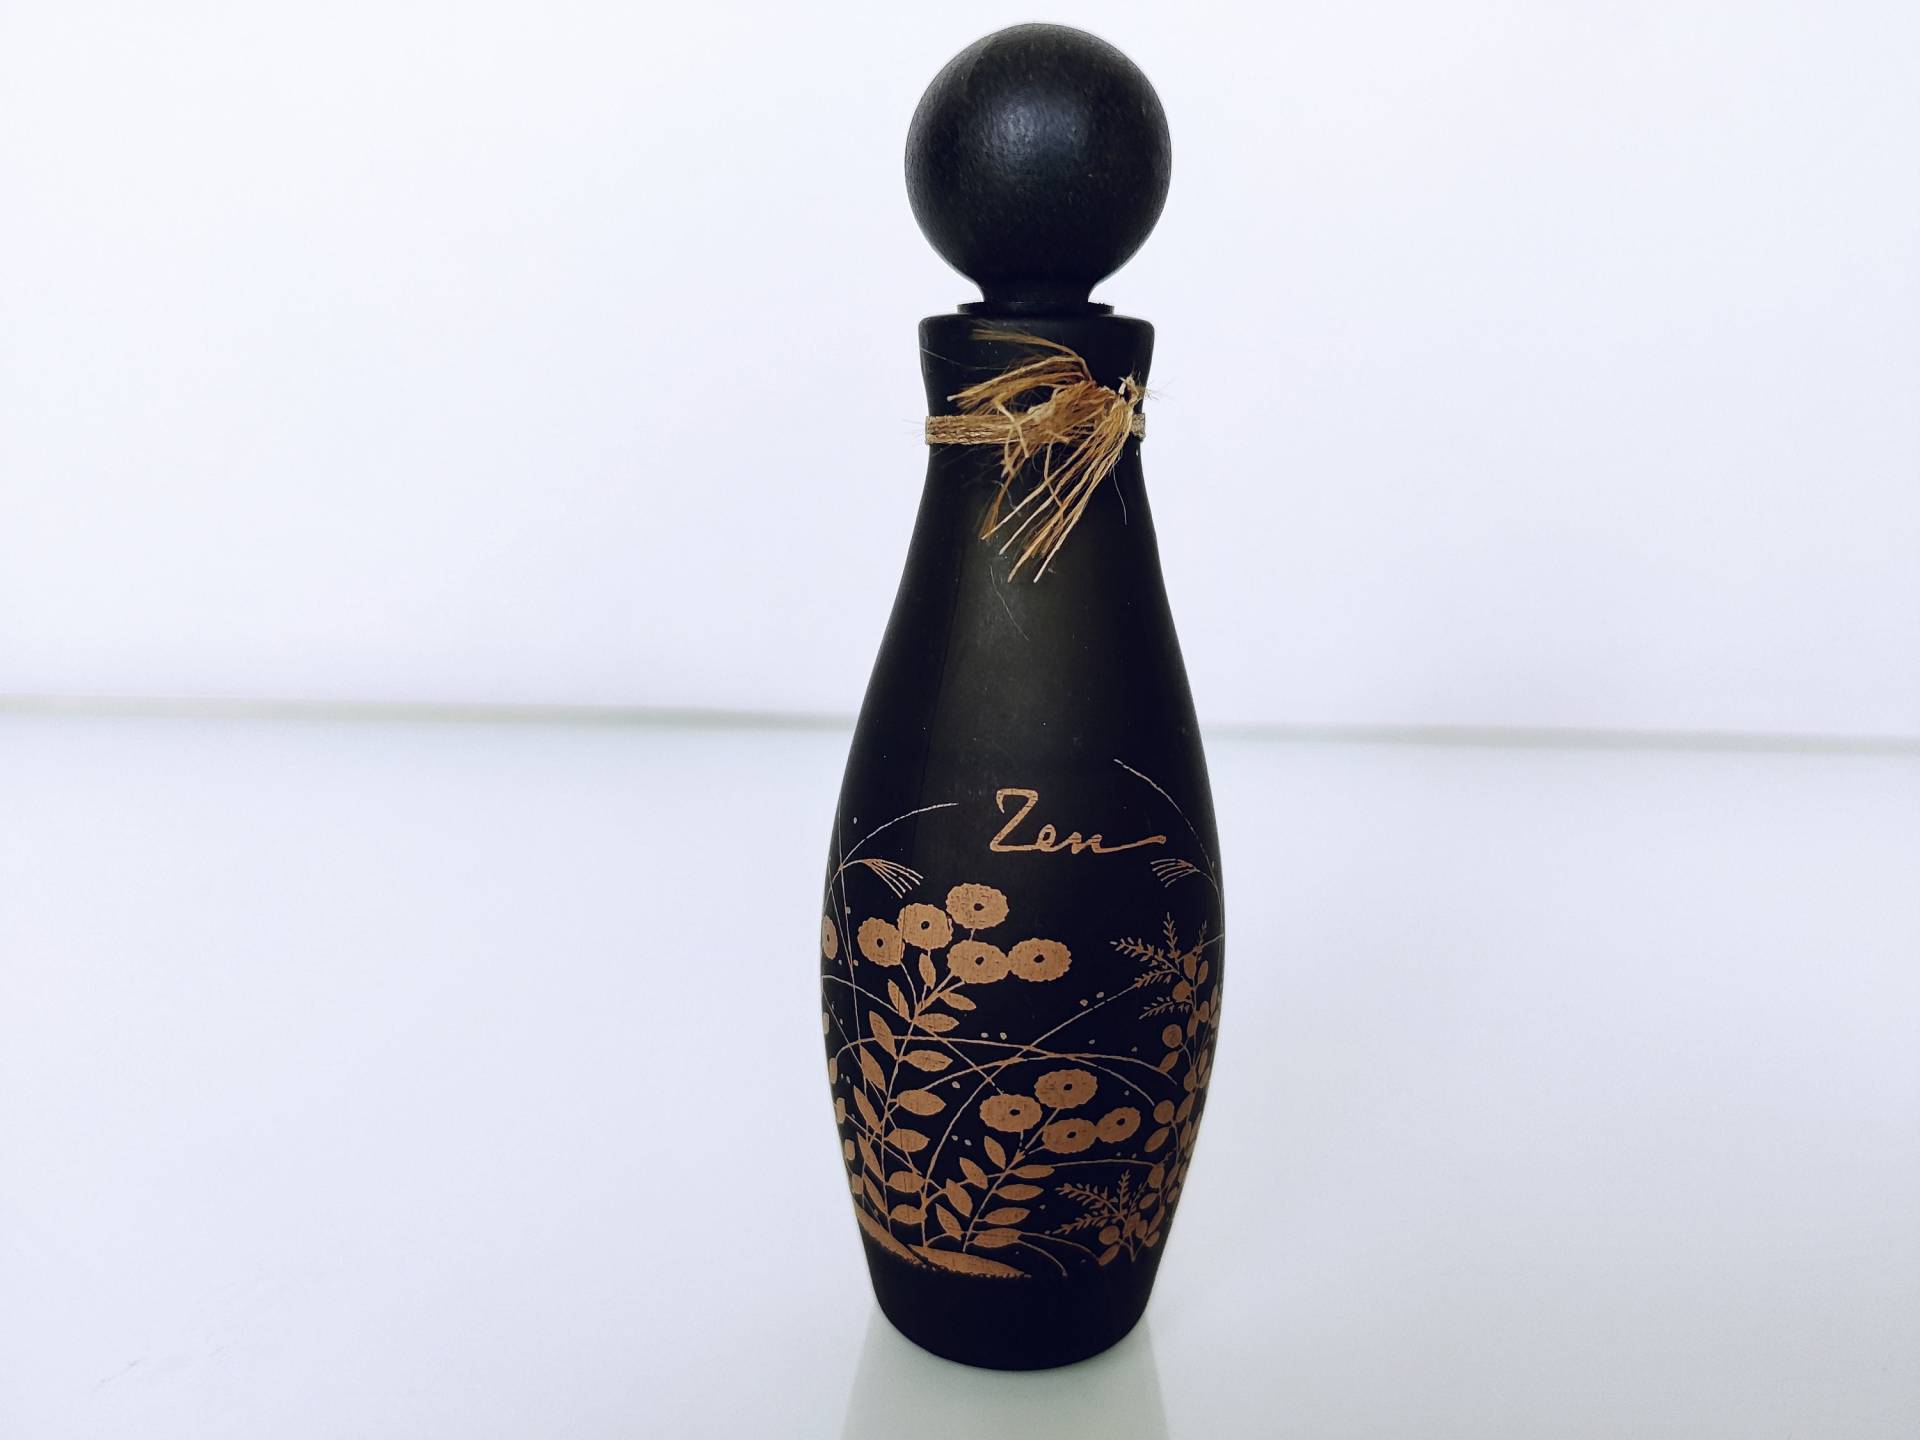 Zen Shiseido | 1964 Parfum/Extrait 30 Cc/1 Us Fl.oz. Splash, Vintage Damenduft, Keine Box, Geschenkidee von Etsy - MyVintageGadgets